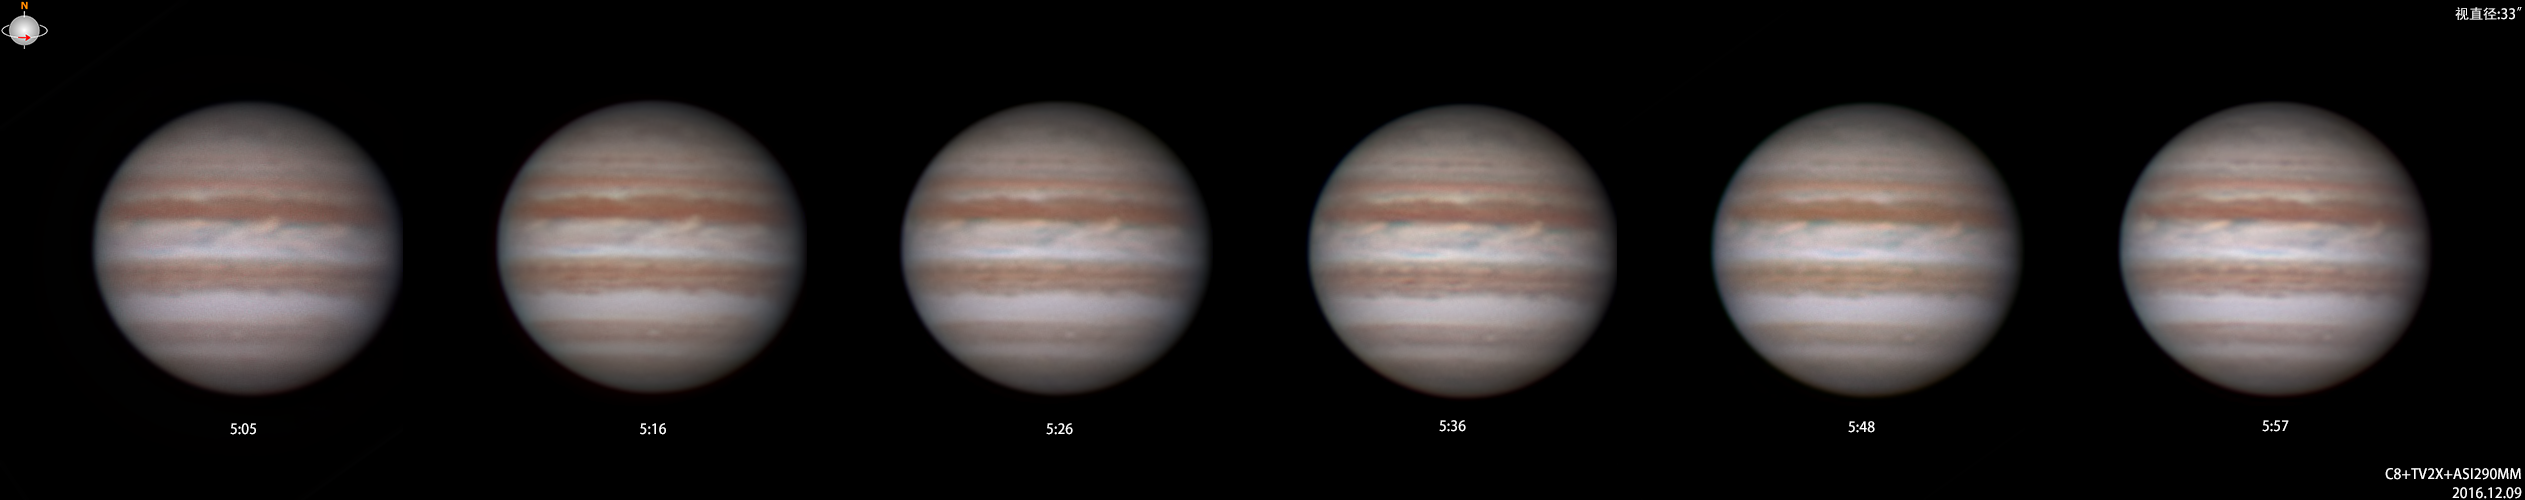 Jupiter20161209.png